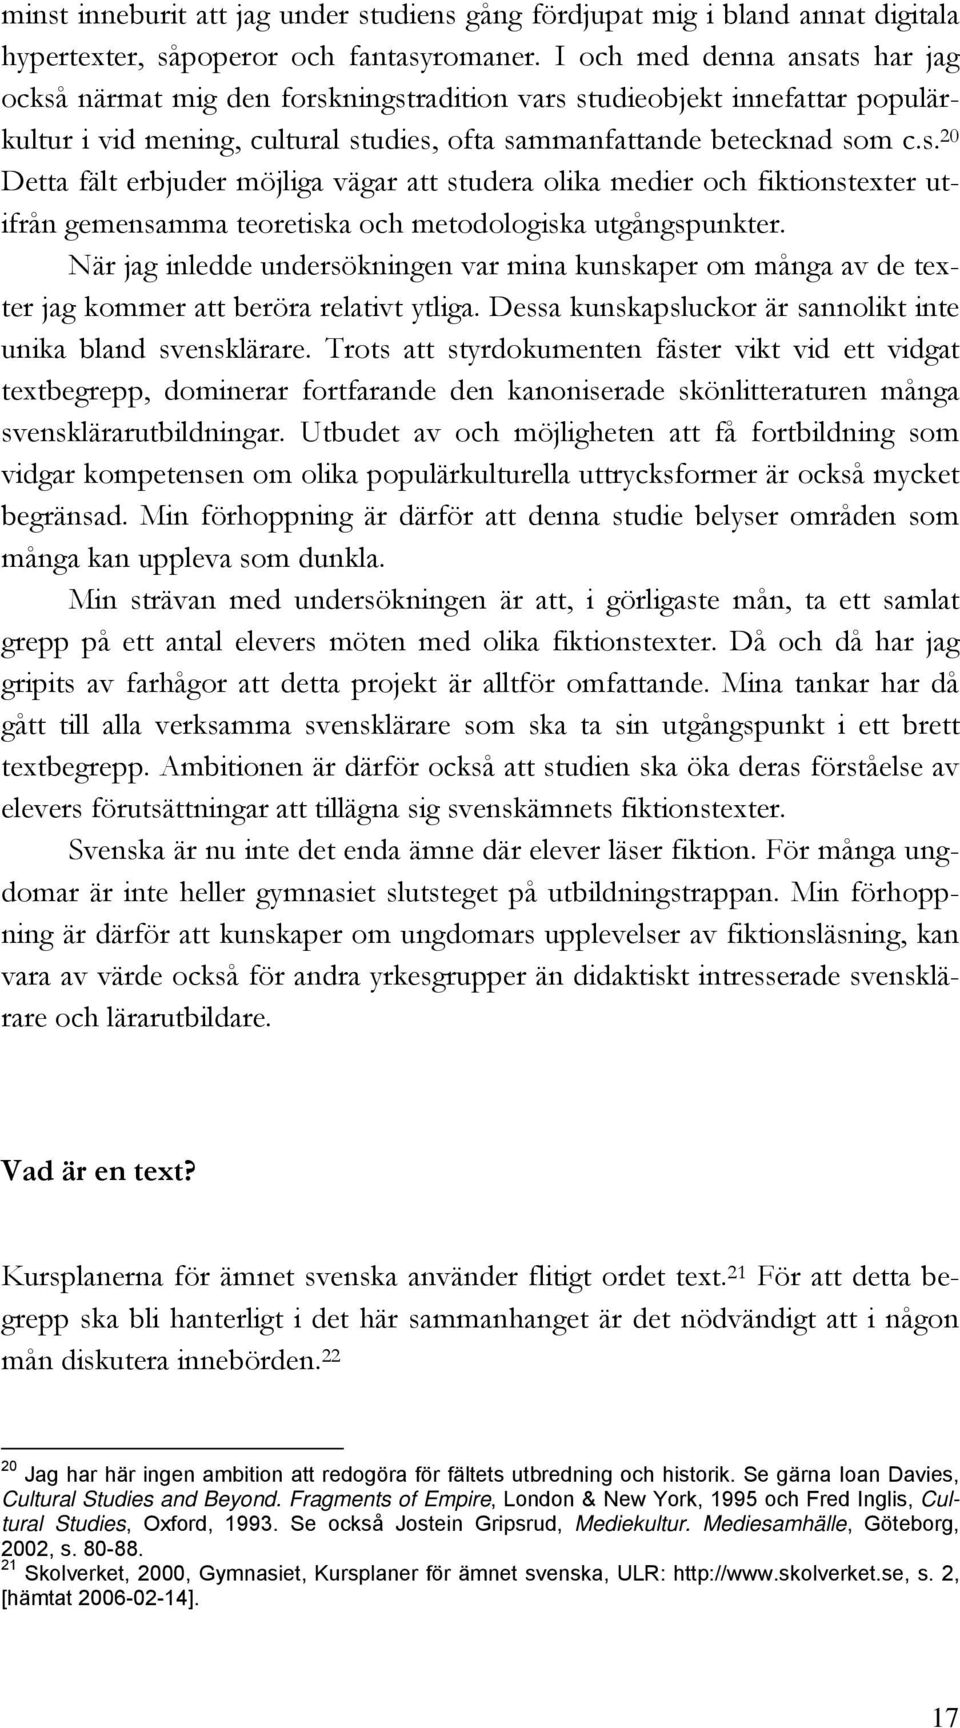 När jag inledde undersökningen var mina kunskaper om många av de texter jag kommer att beröra relativt ytliga. Dessa kunskapsluckor är sannolikt inte unika bland svensklärare.